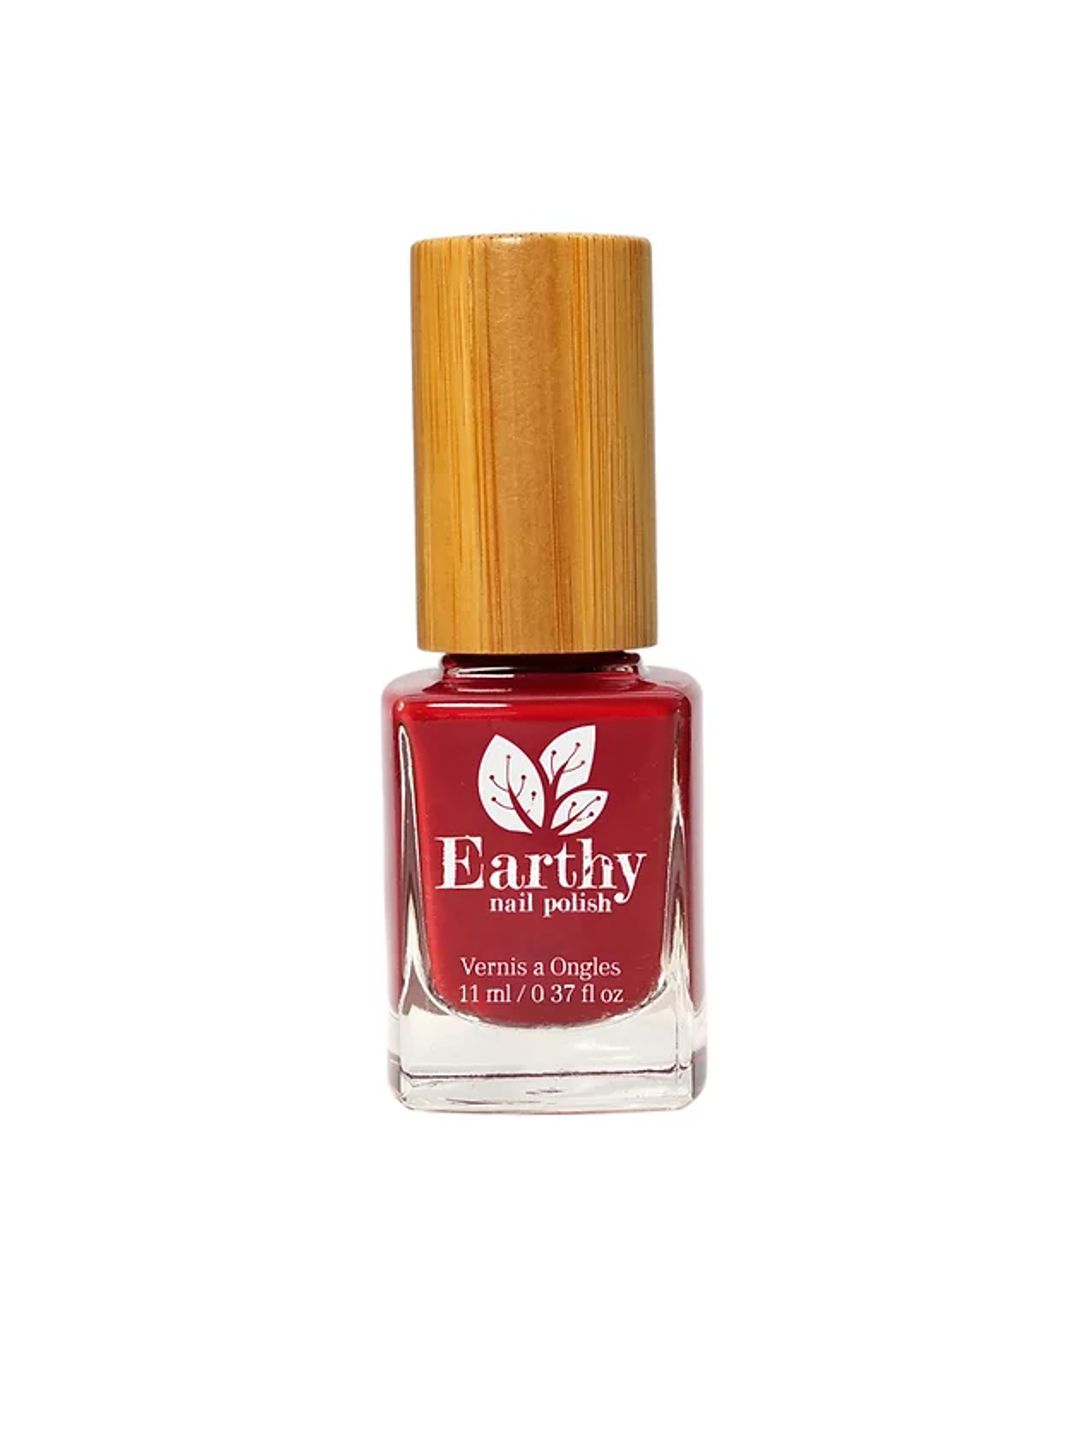 Royally Red - Earthy nail polish